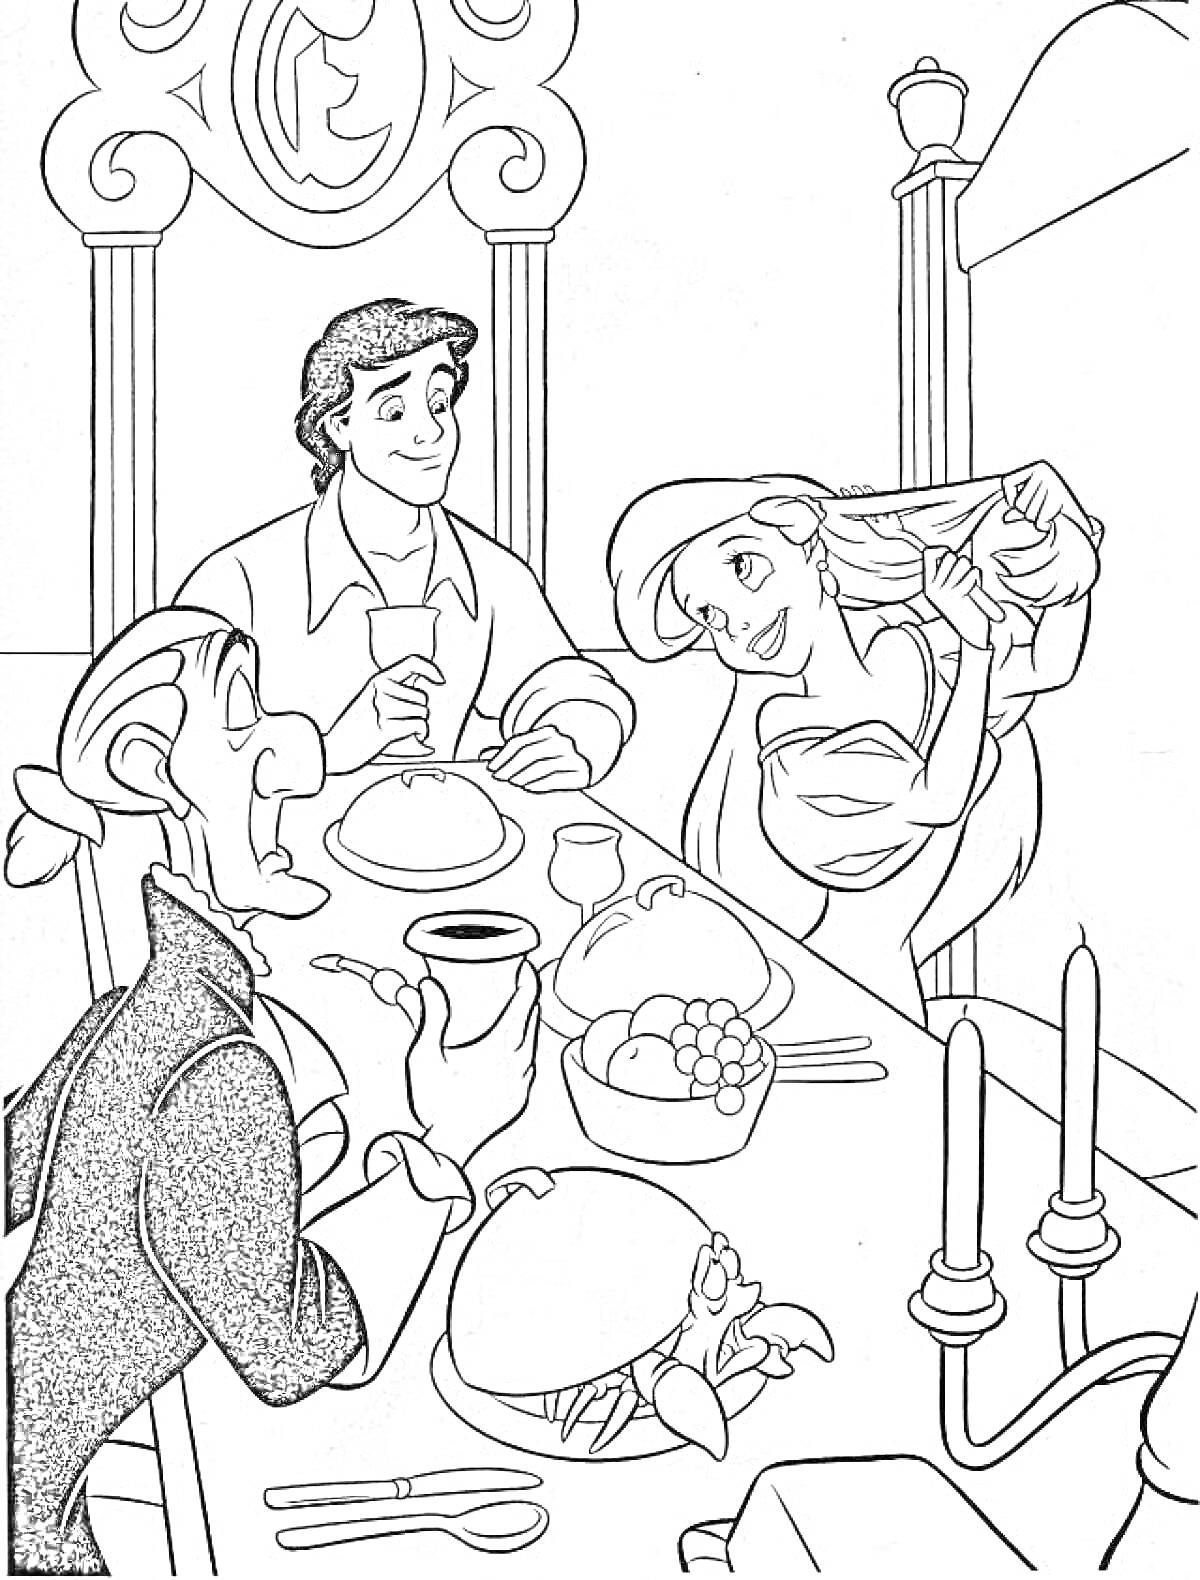  Ариэль и принц Эрик за обедом с придворным, блюда на столе, свечи